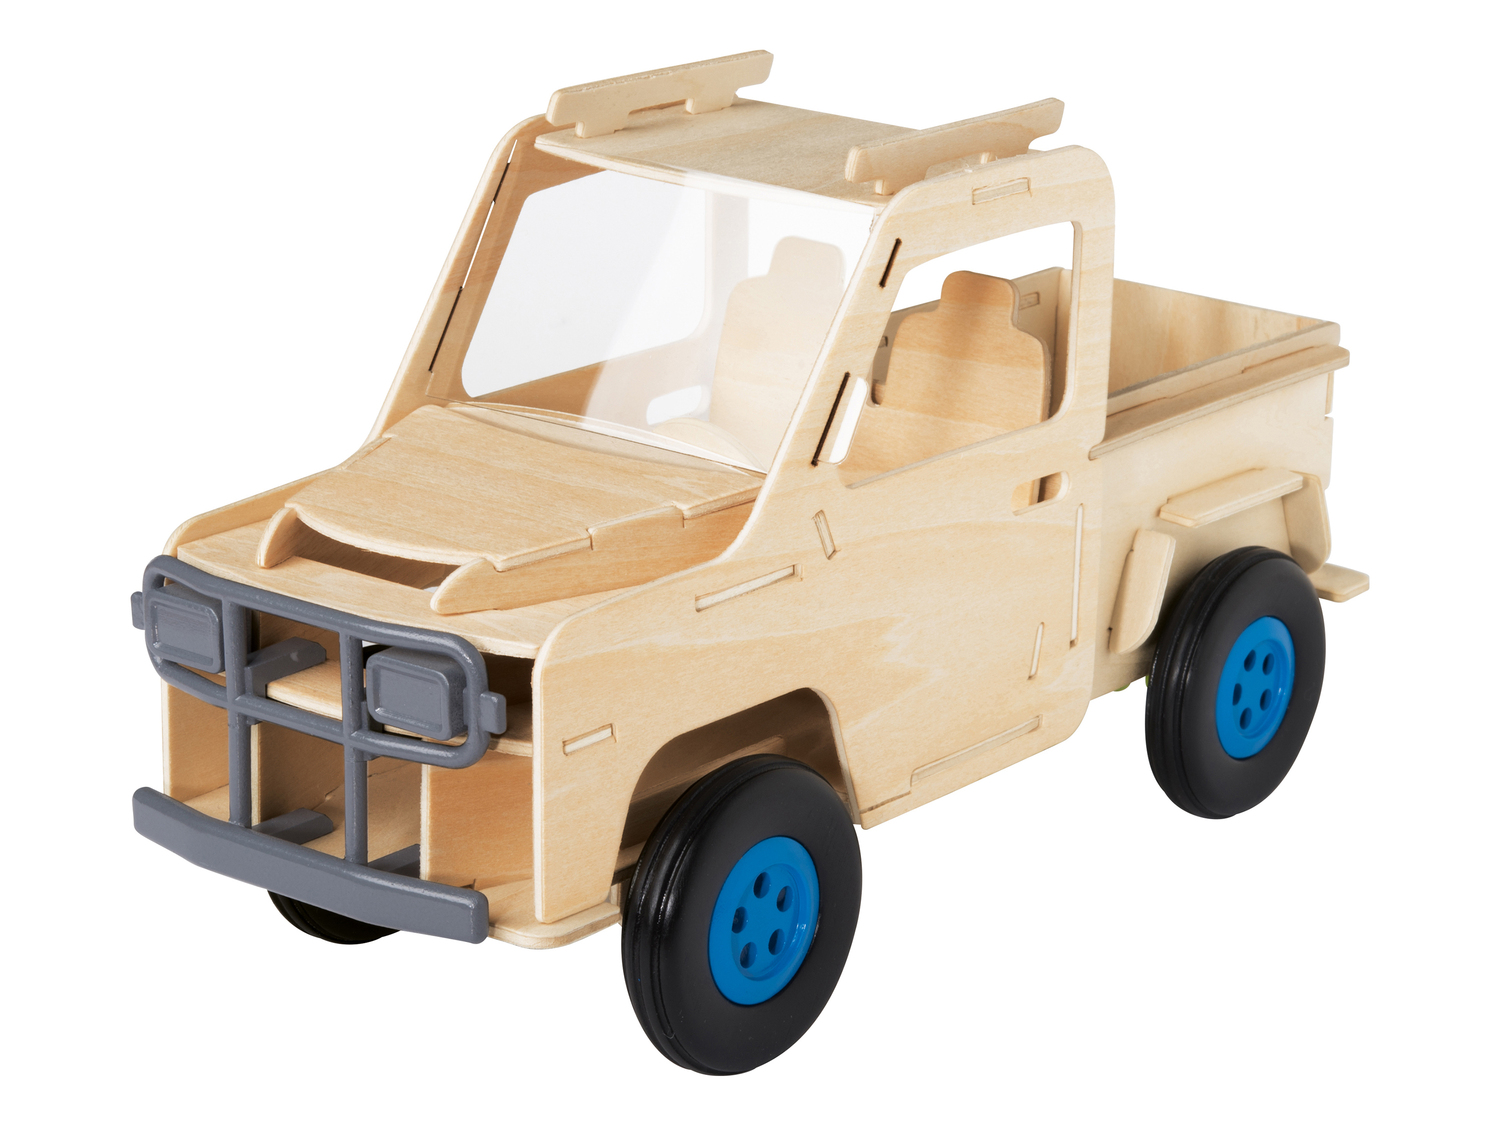 Set modellino in legno da costruire Playtive Junior, prezzo 9.99 &#8364; 

Caratteristiche

- ...